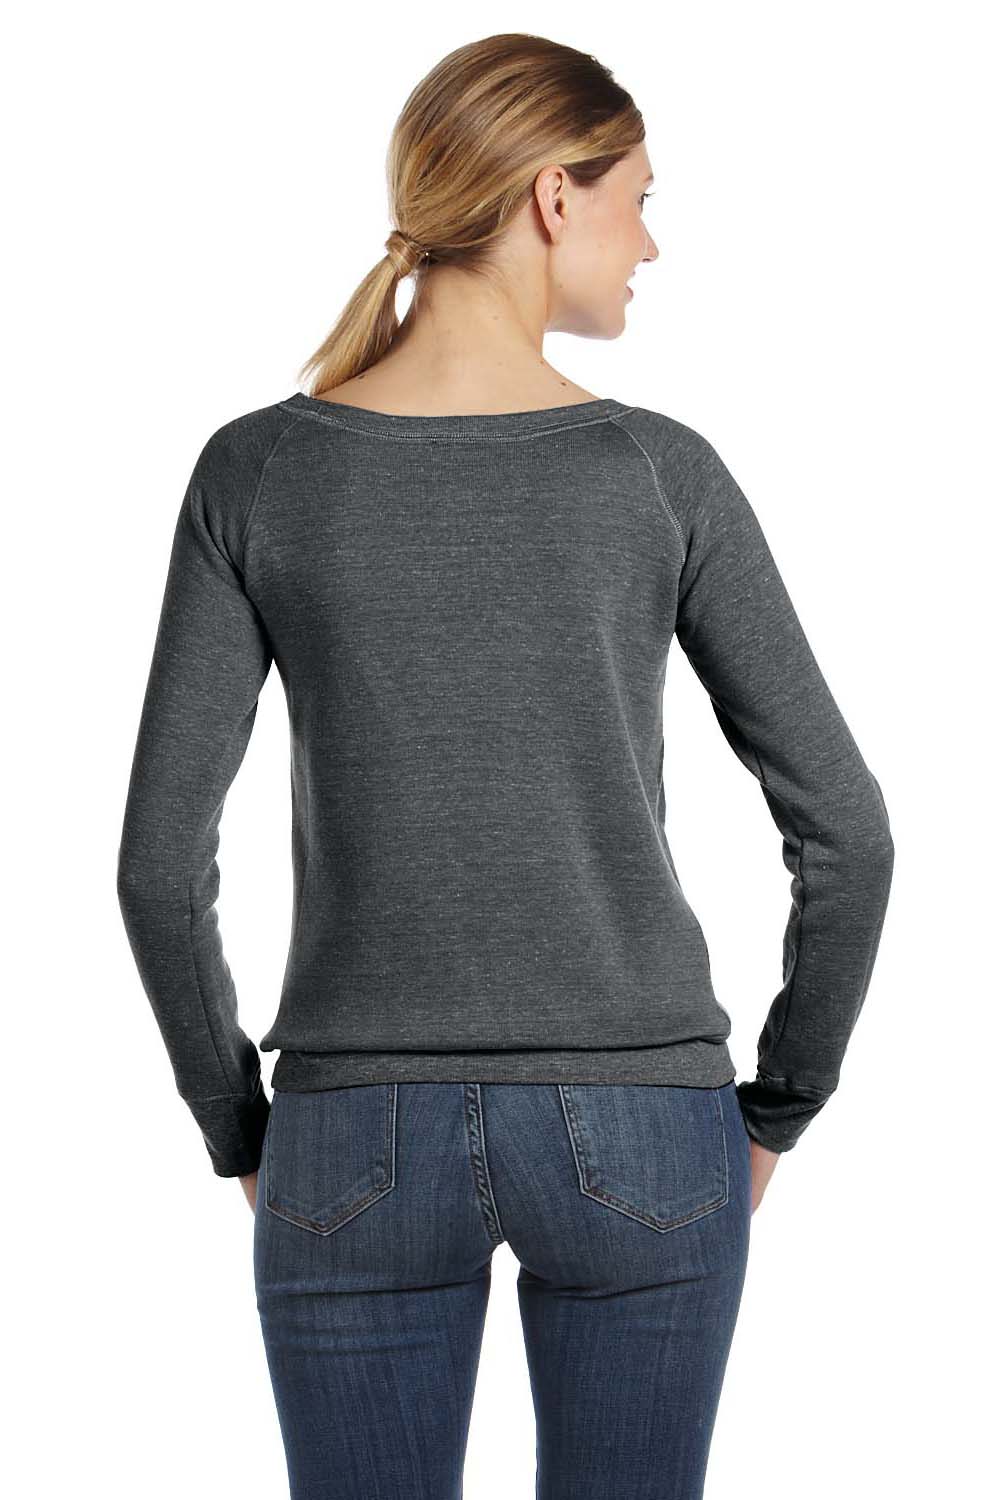 Bella + Canvas 7501 Womens Sponge Fleece Wide Neck Sweatshirt Solid Black Model Back